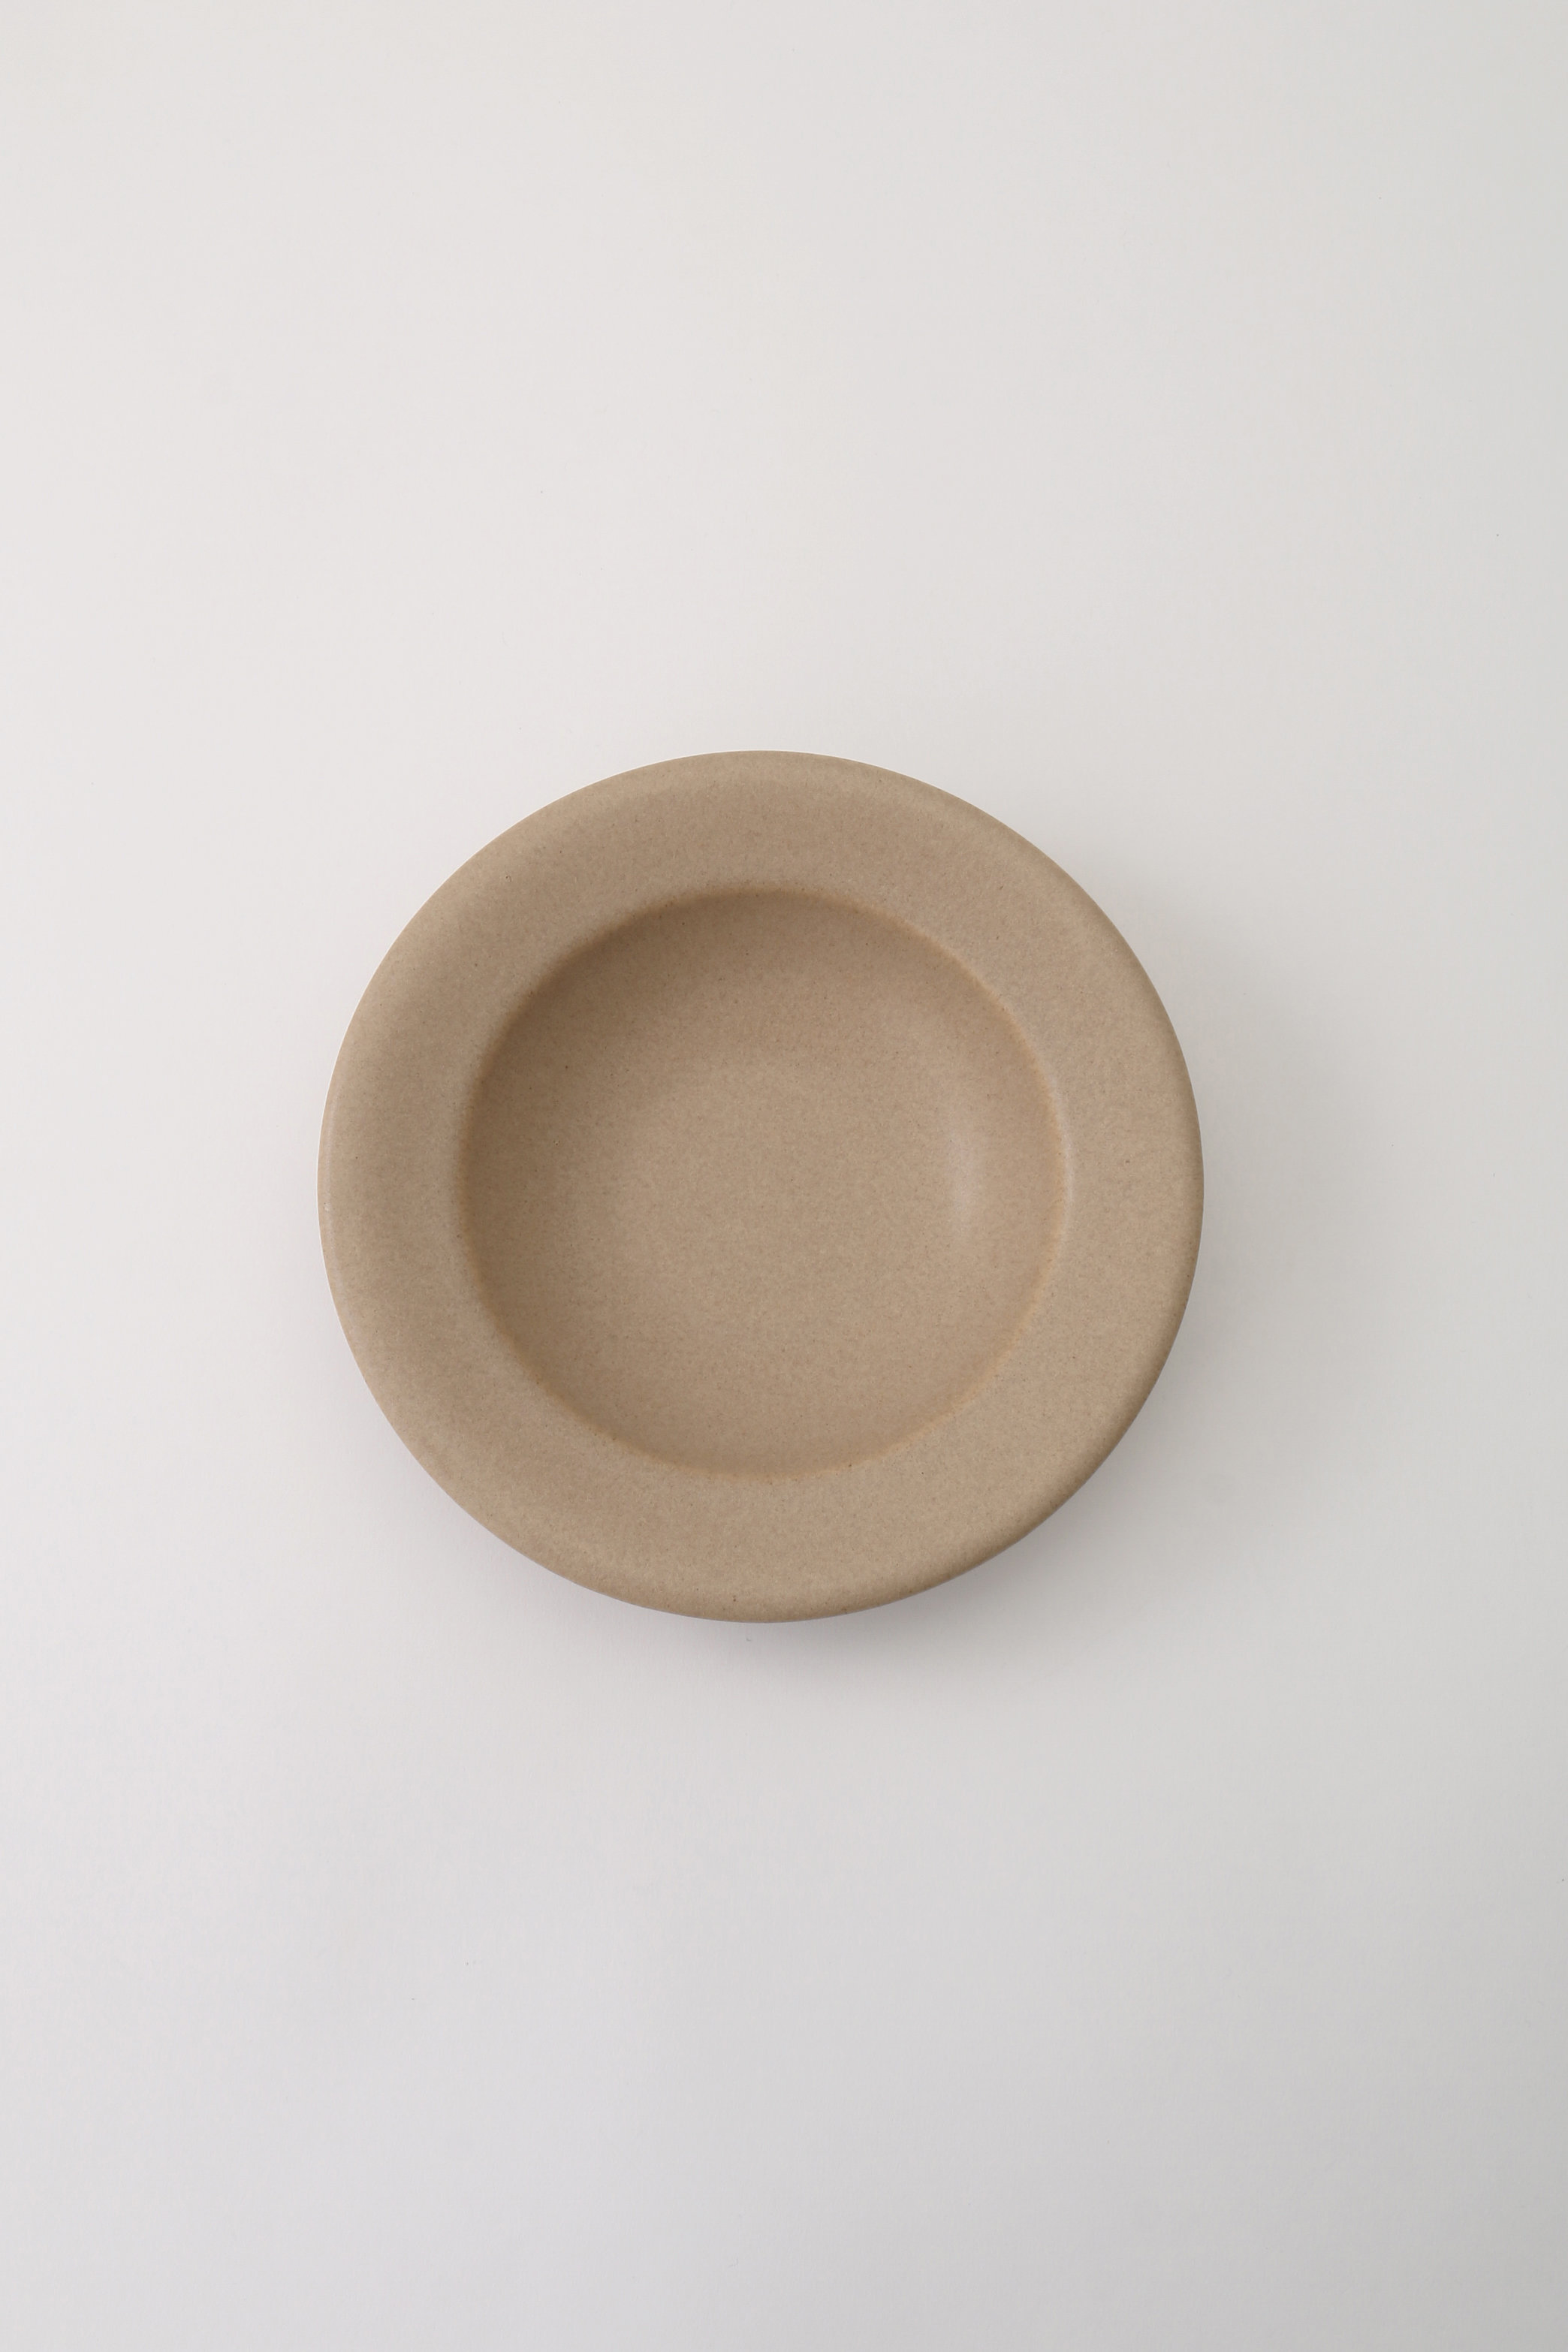 あわびウェア/Awabi wareのリムスープ皿 S(ベージュ/L01-020)